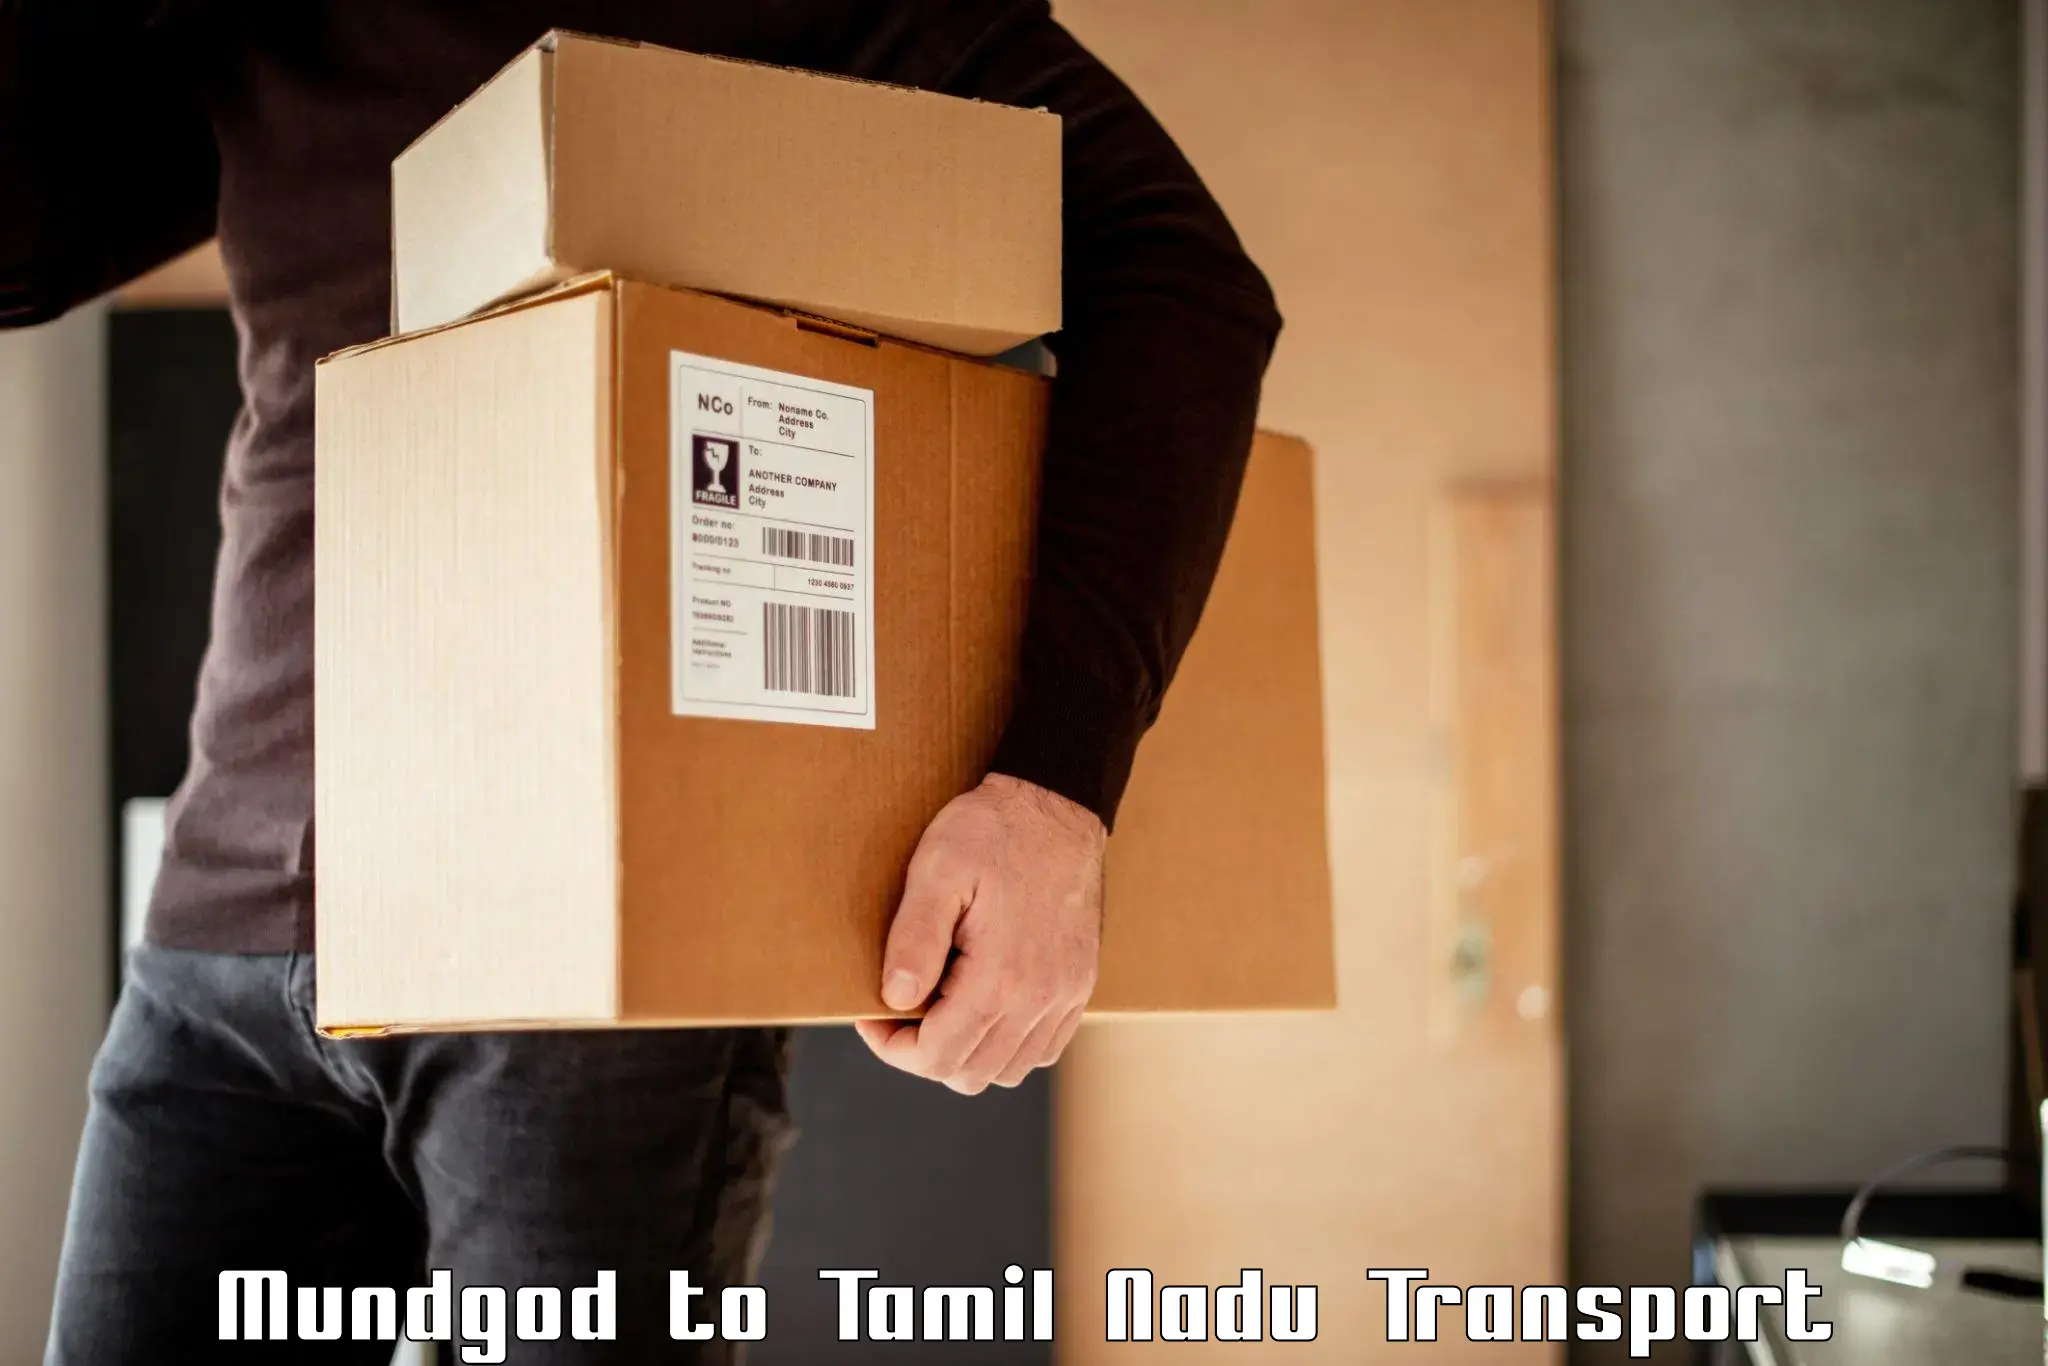 Two wheeler parcel service Mundgod to Vickramasingapuram